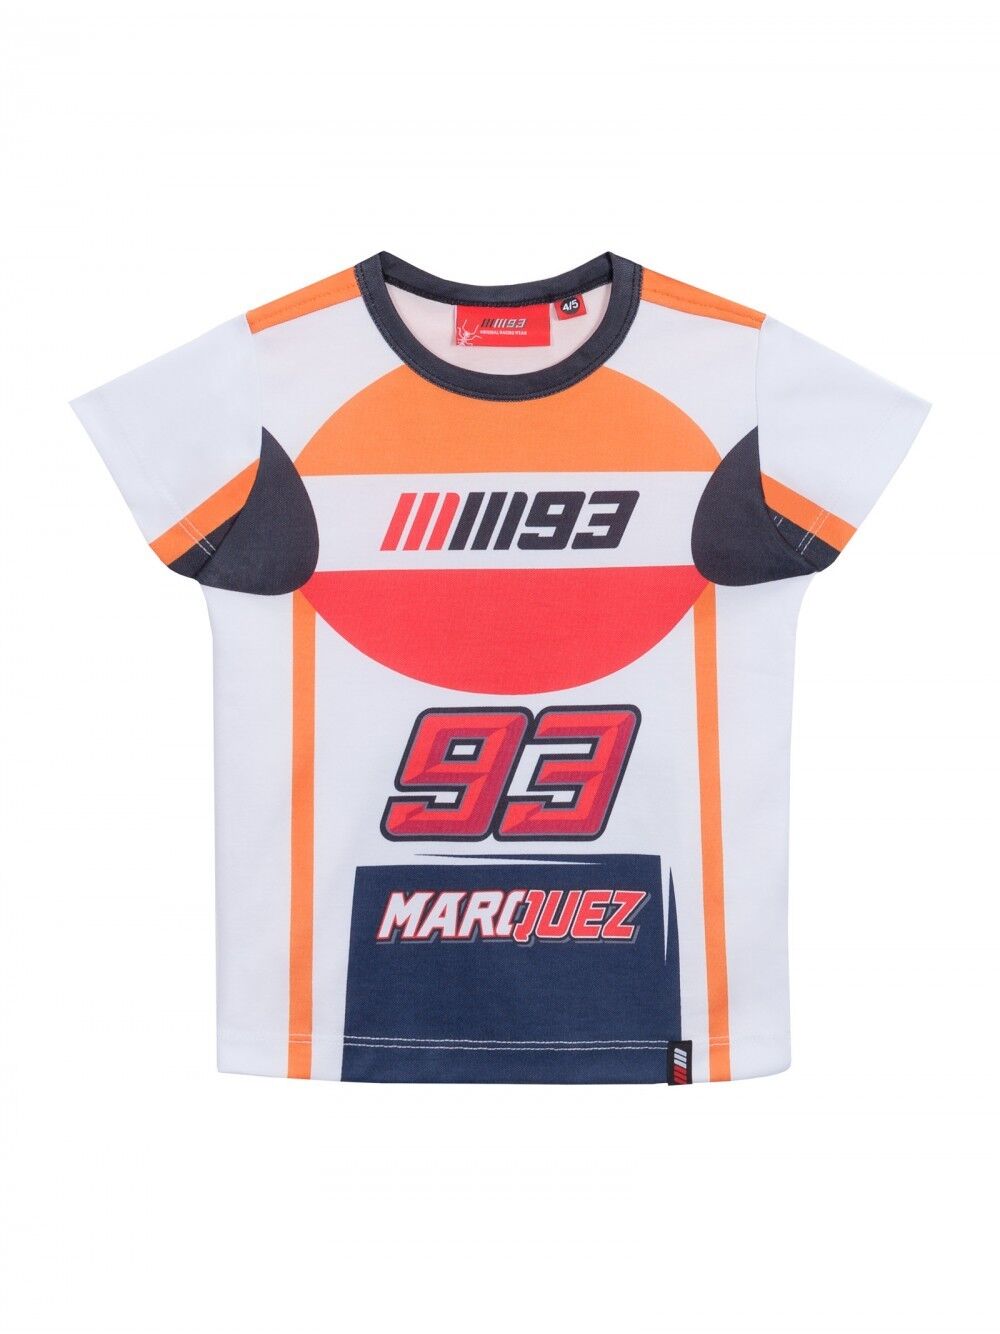 Marc Marquez Official Replica Suit T-Shirt - 18 33025